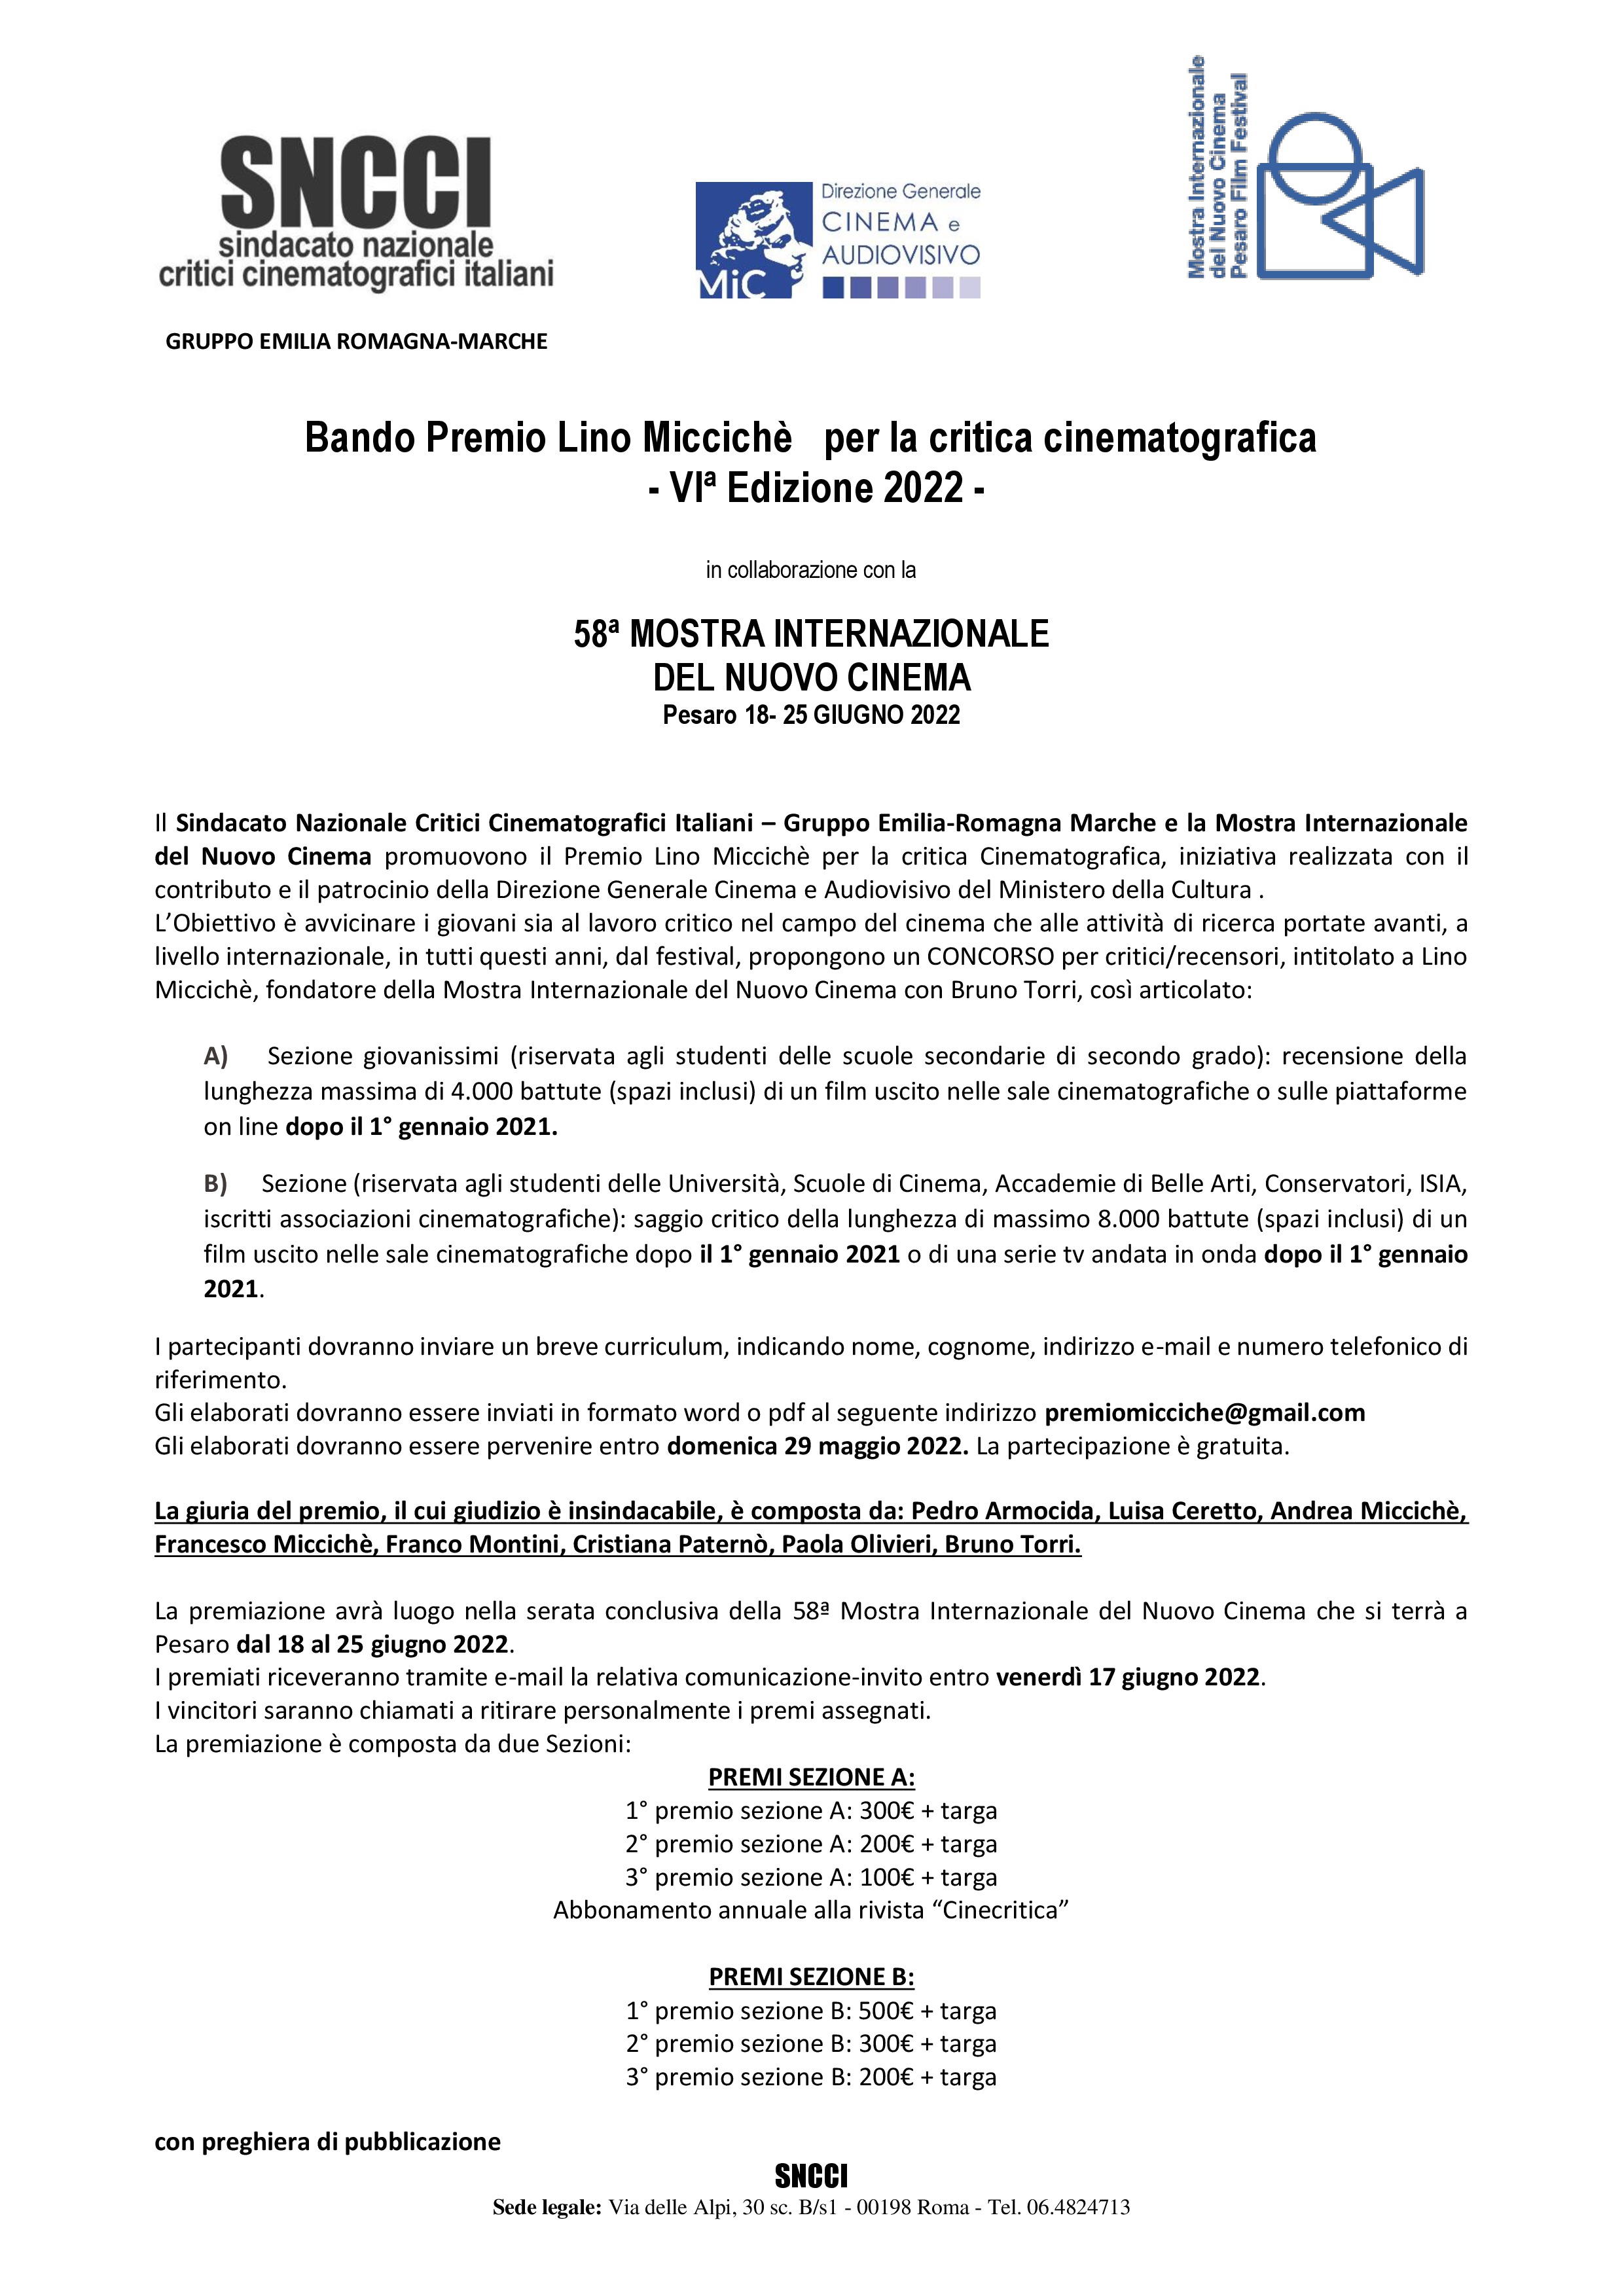 Attachment Bando  PREMIO MICCICHE 4a Edizione 2022 (1).jpg